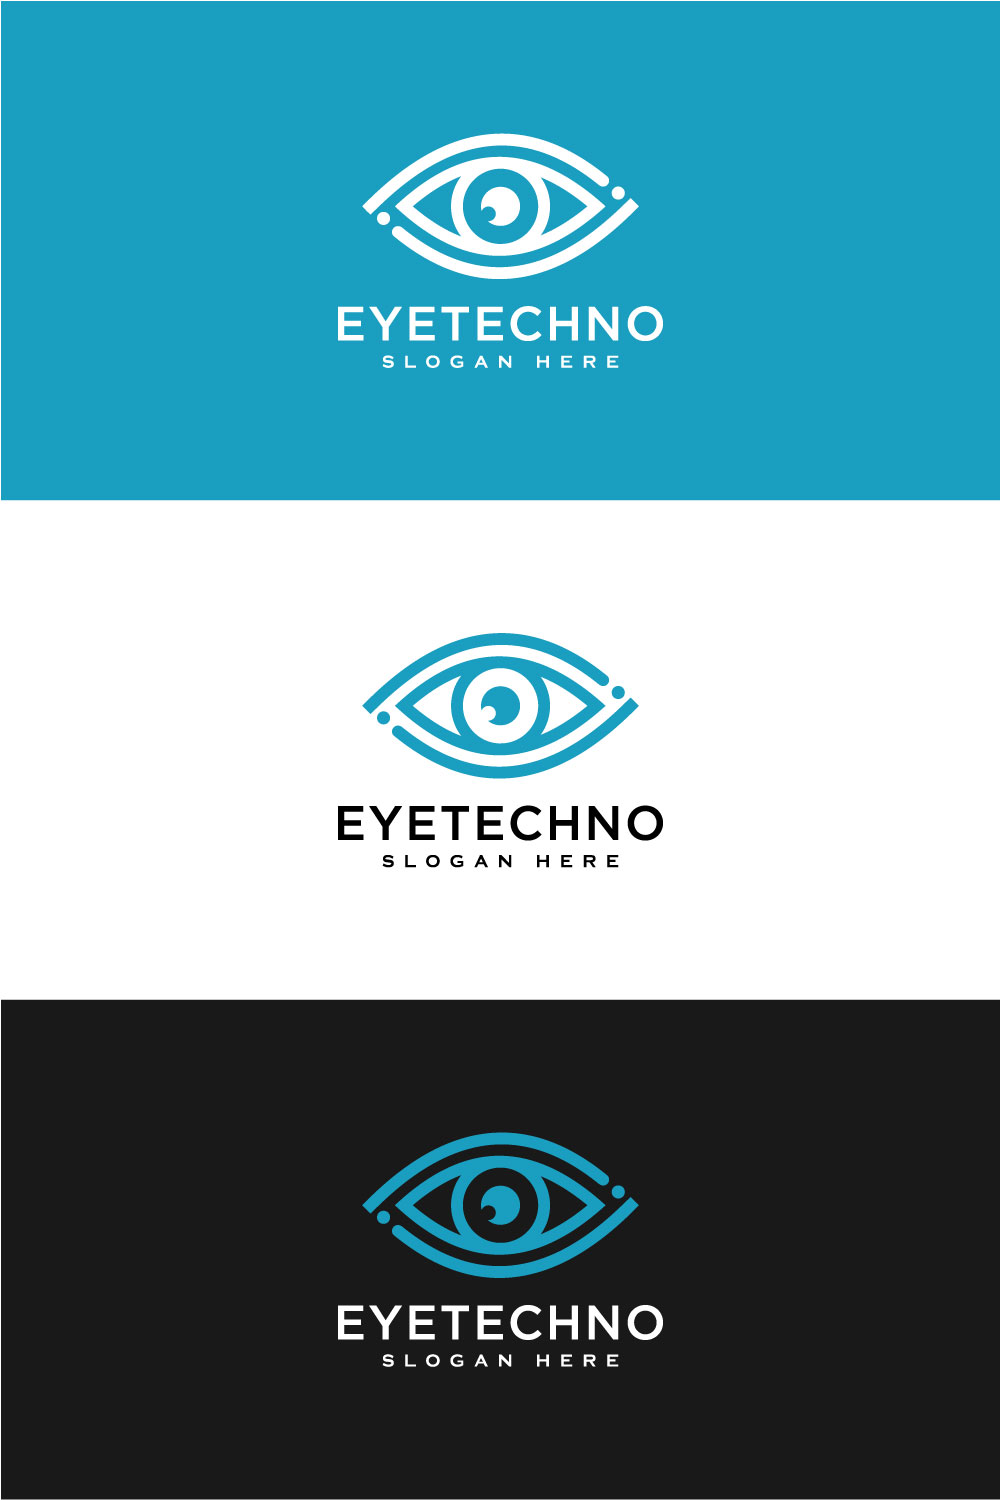 Eye Technology Logo Design Vector Line Style pinterest.